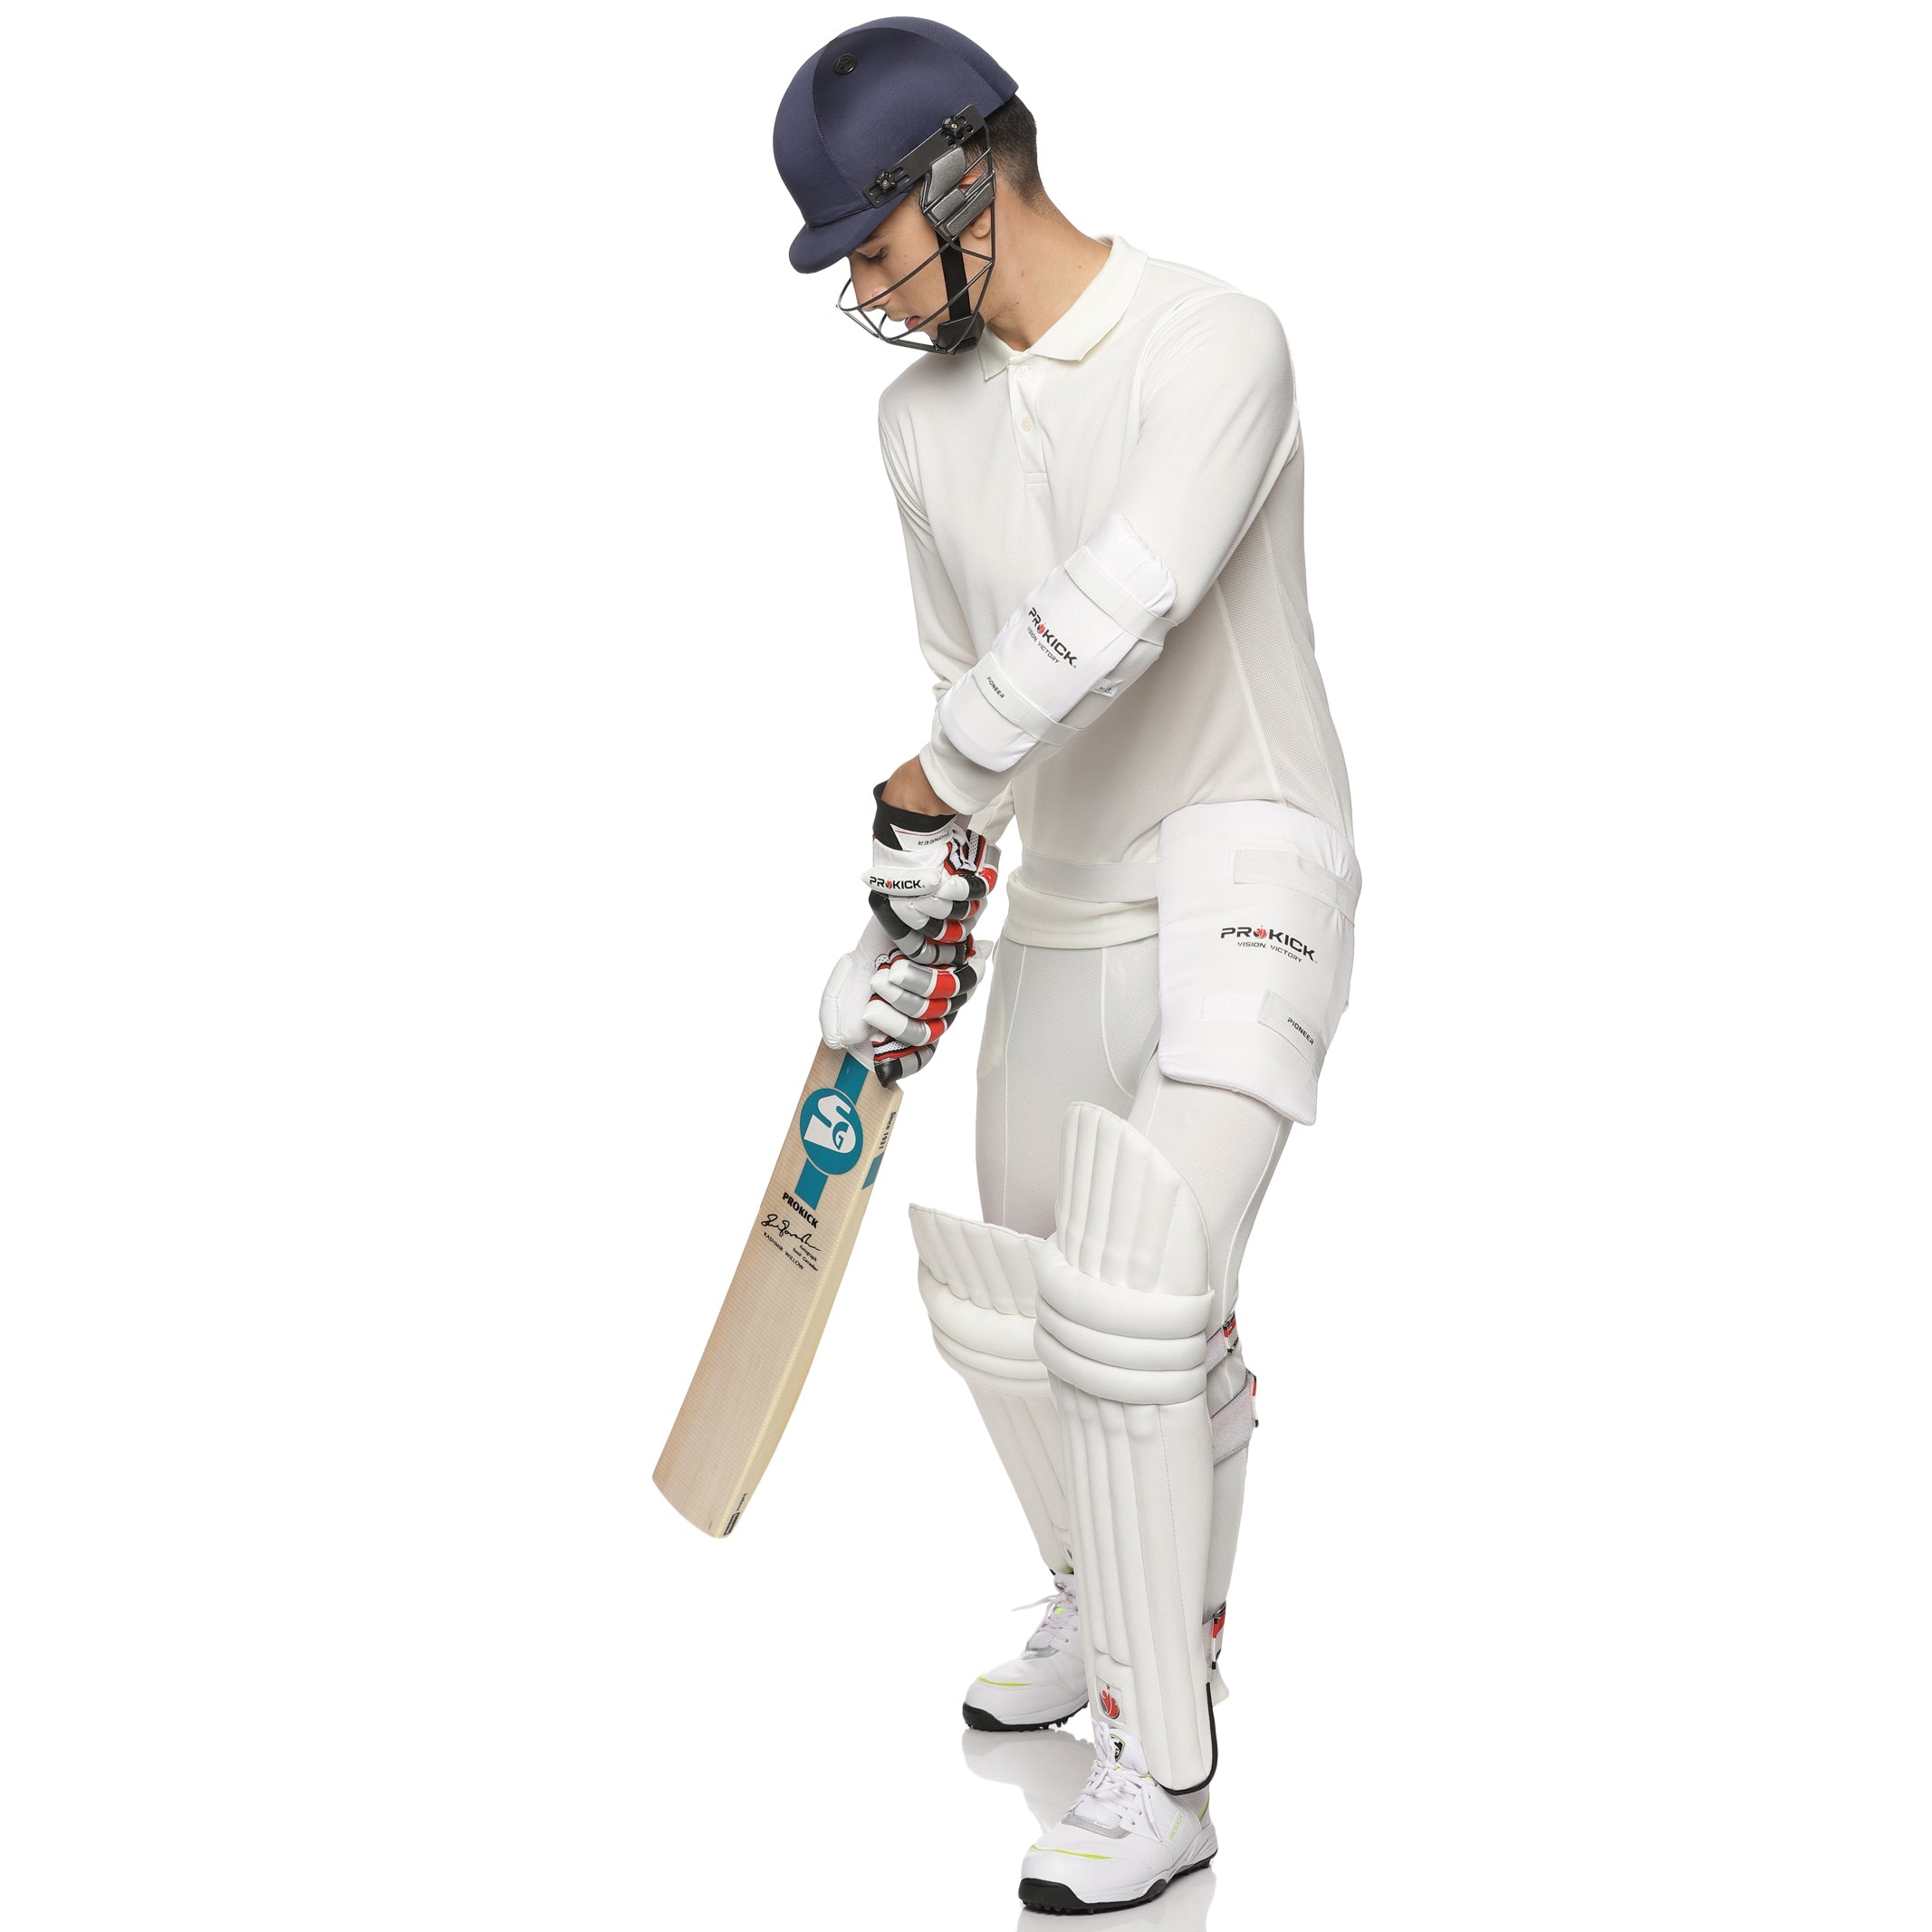 Blue Dri-Fit Cricket Kit Set at Rs 699/set in Jalandhar | ID: 2852621218555